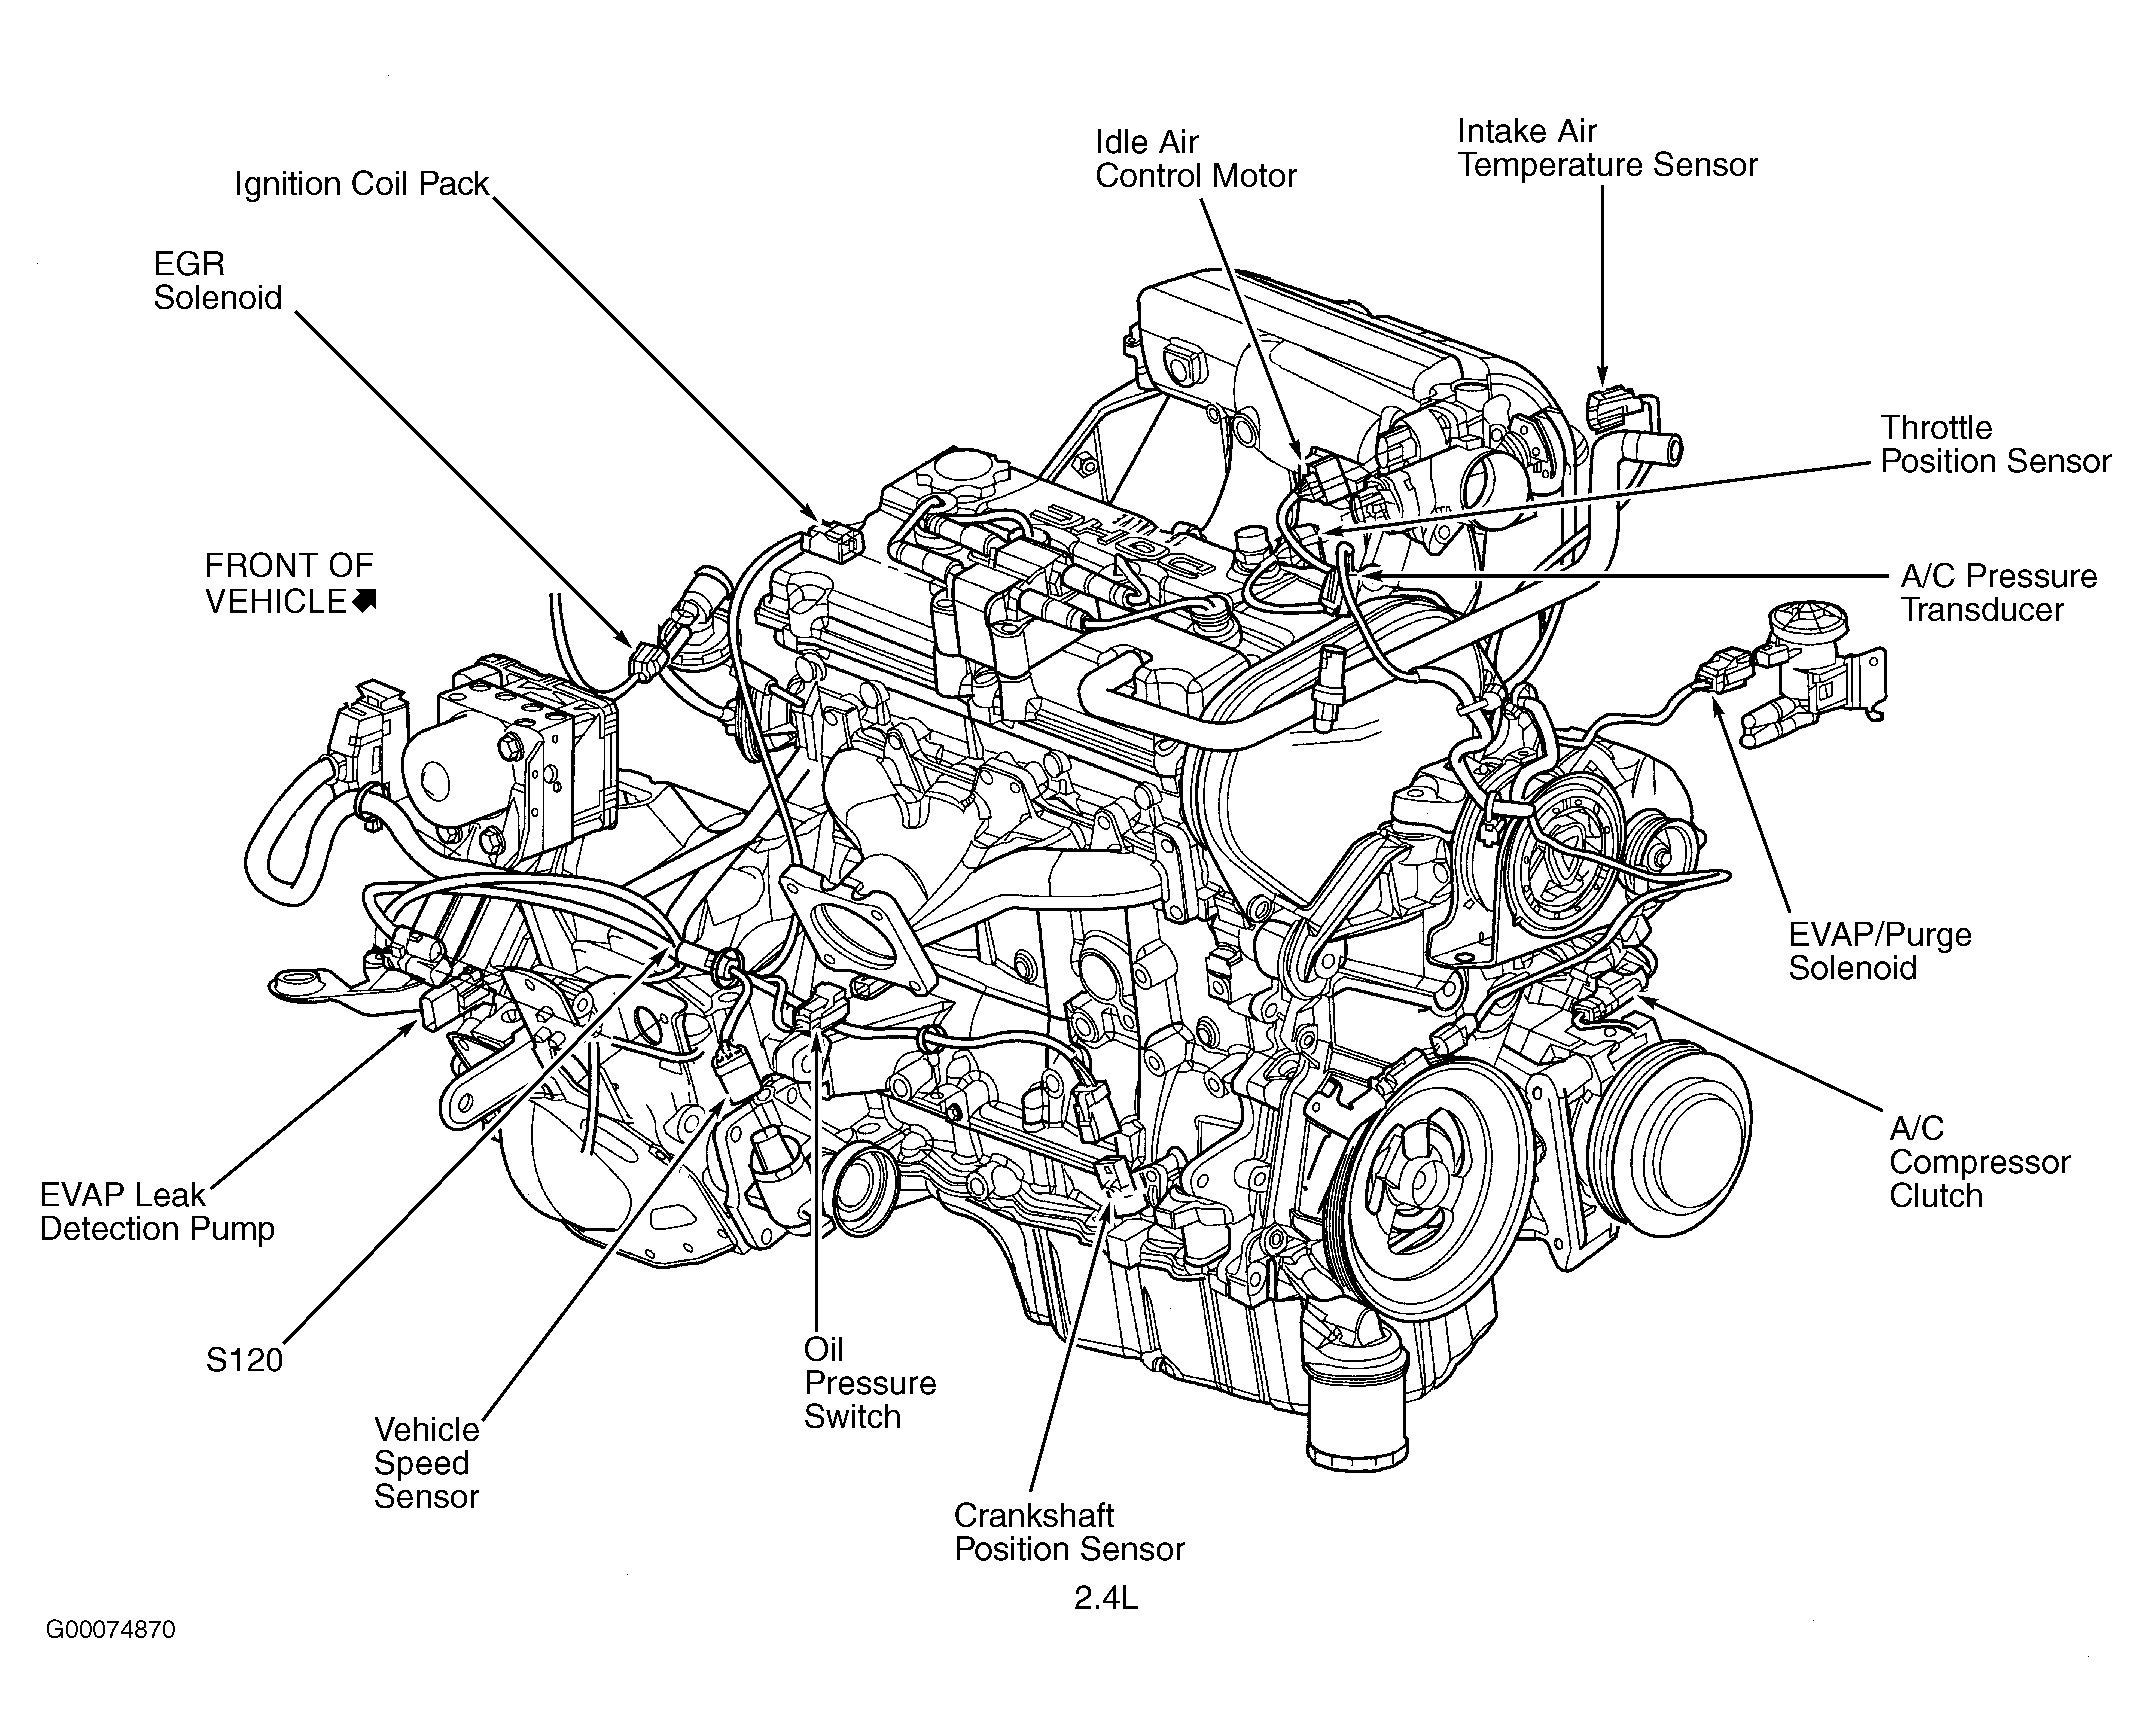 Dodge Grand Caravan EX 2001 - Component Locations -  Engine (2.4L)